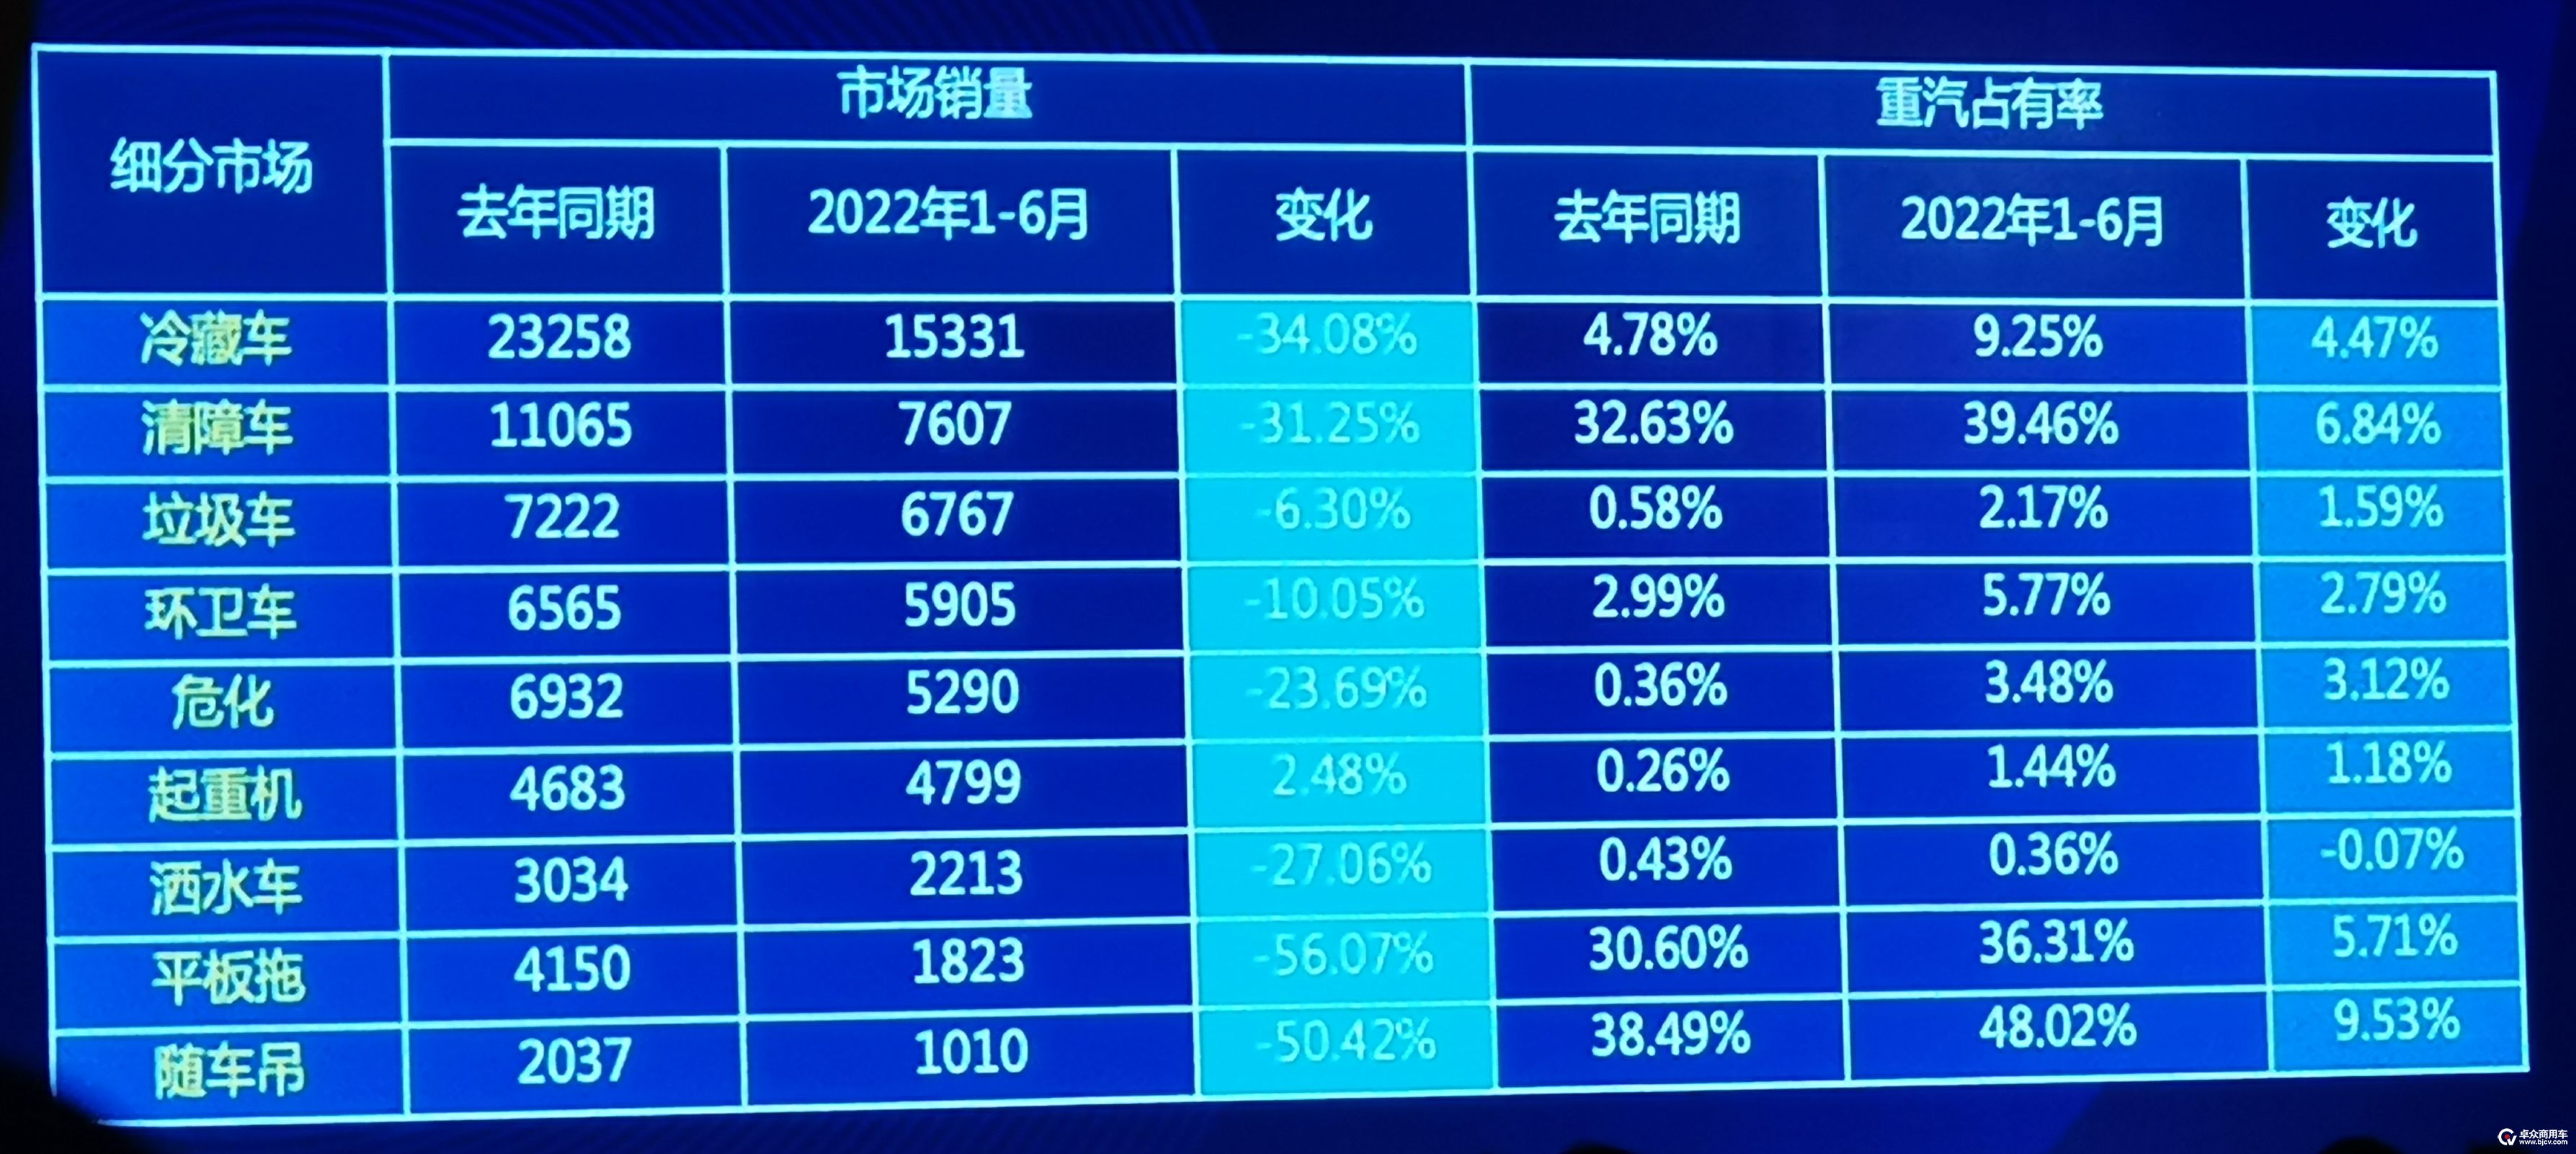 图2-2  2022上半年中国重汽集团在诸多专用汽车细分市场的占有率实现提升.jpg